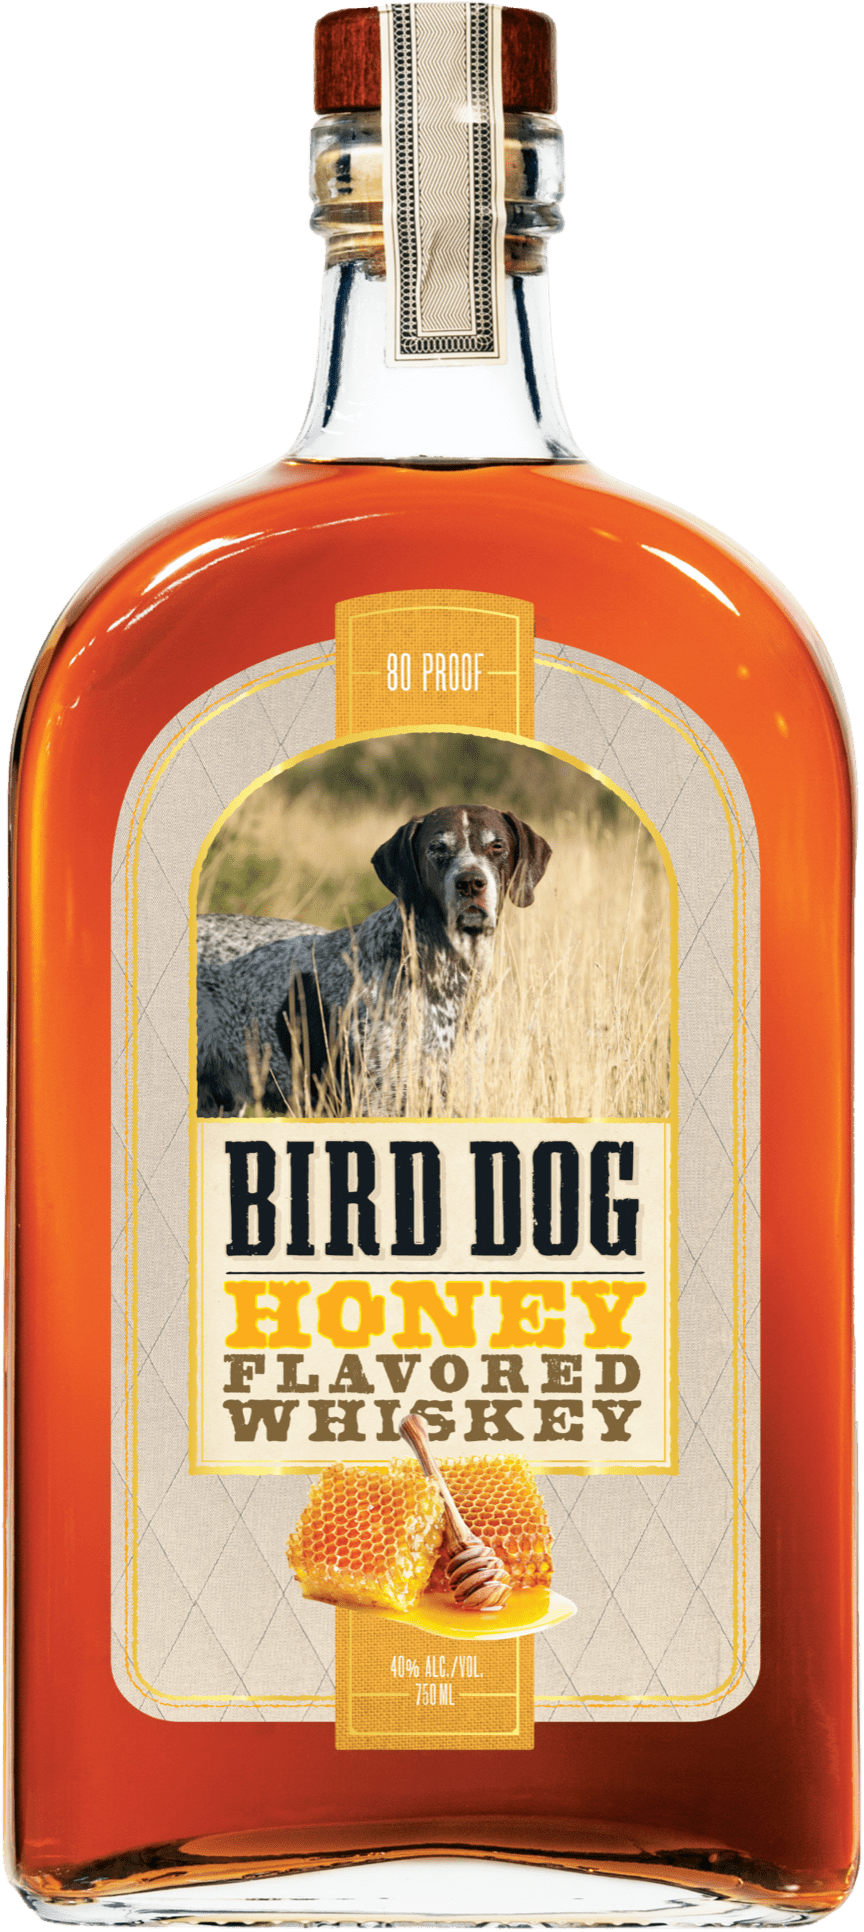 Honey Flavored Whiskey | Bird Dog Whiskey